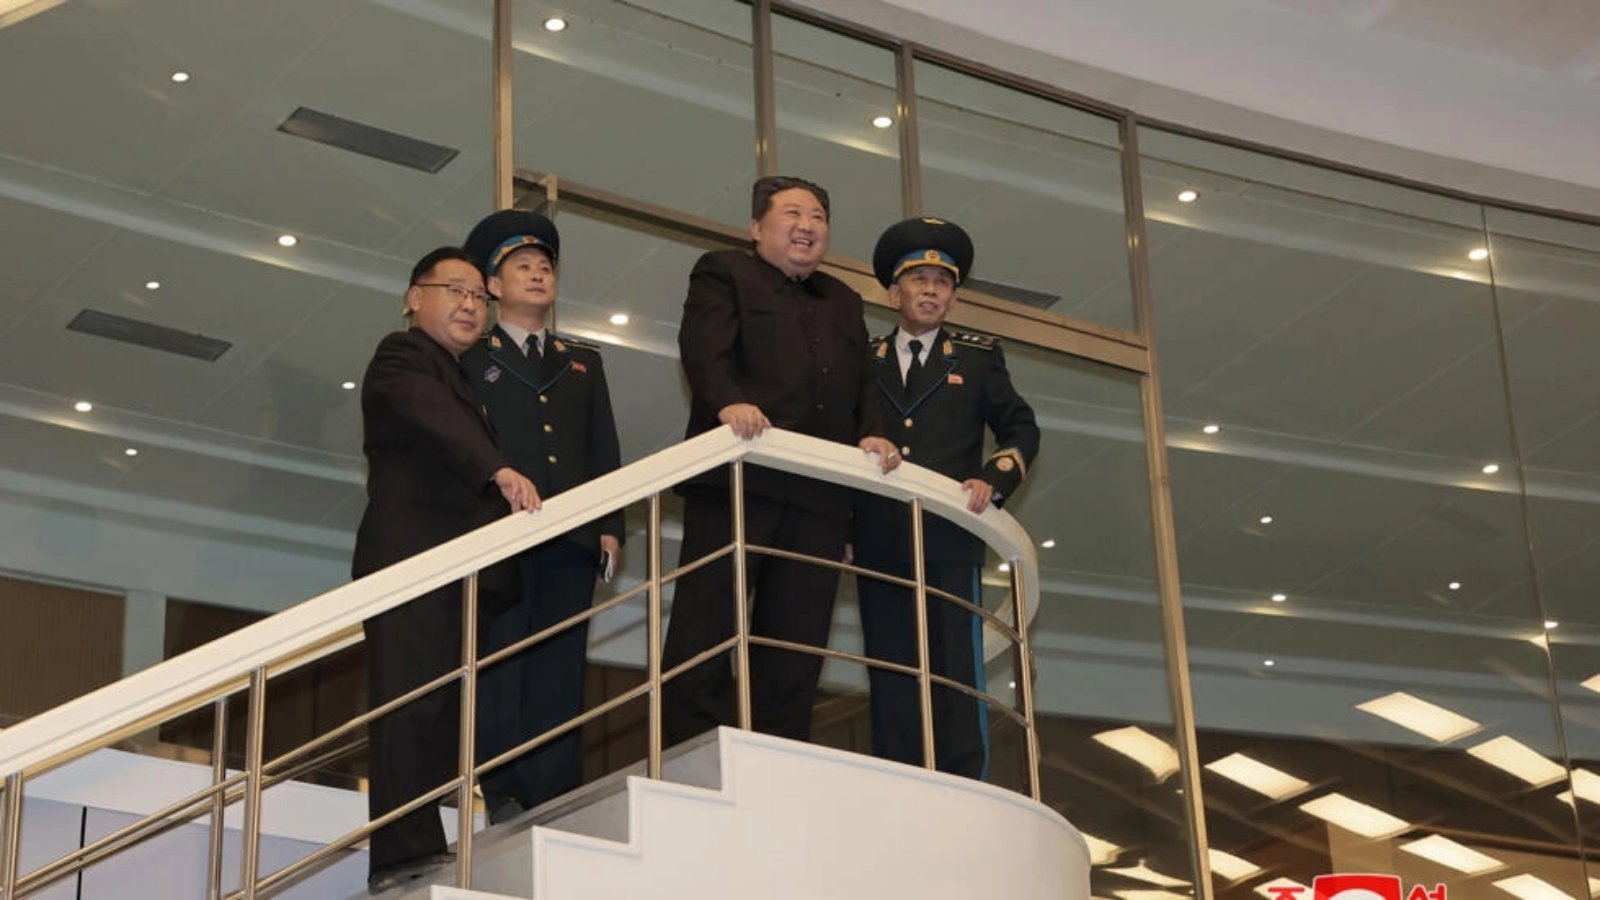 صورة وزعتها وكالة الأنباء الكورية الشمالية الرسمية تظهر كيم جونغ أون خلال زيارة لمركز التحكم العام في بيونغ يانغ التابع لمديرية تكنولوجيا الطيران الوطنية الكورية في 22 نوفمبر 2023